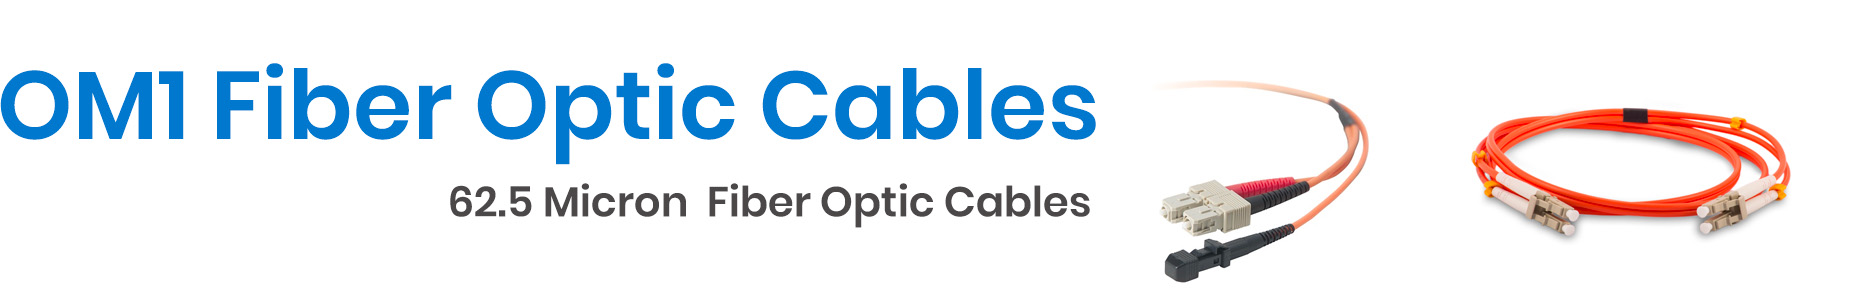 Shop OM1 Fiber Optic Cable - Cables.com.